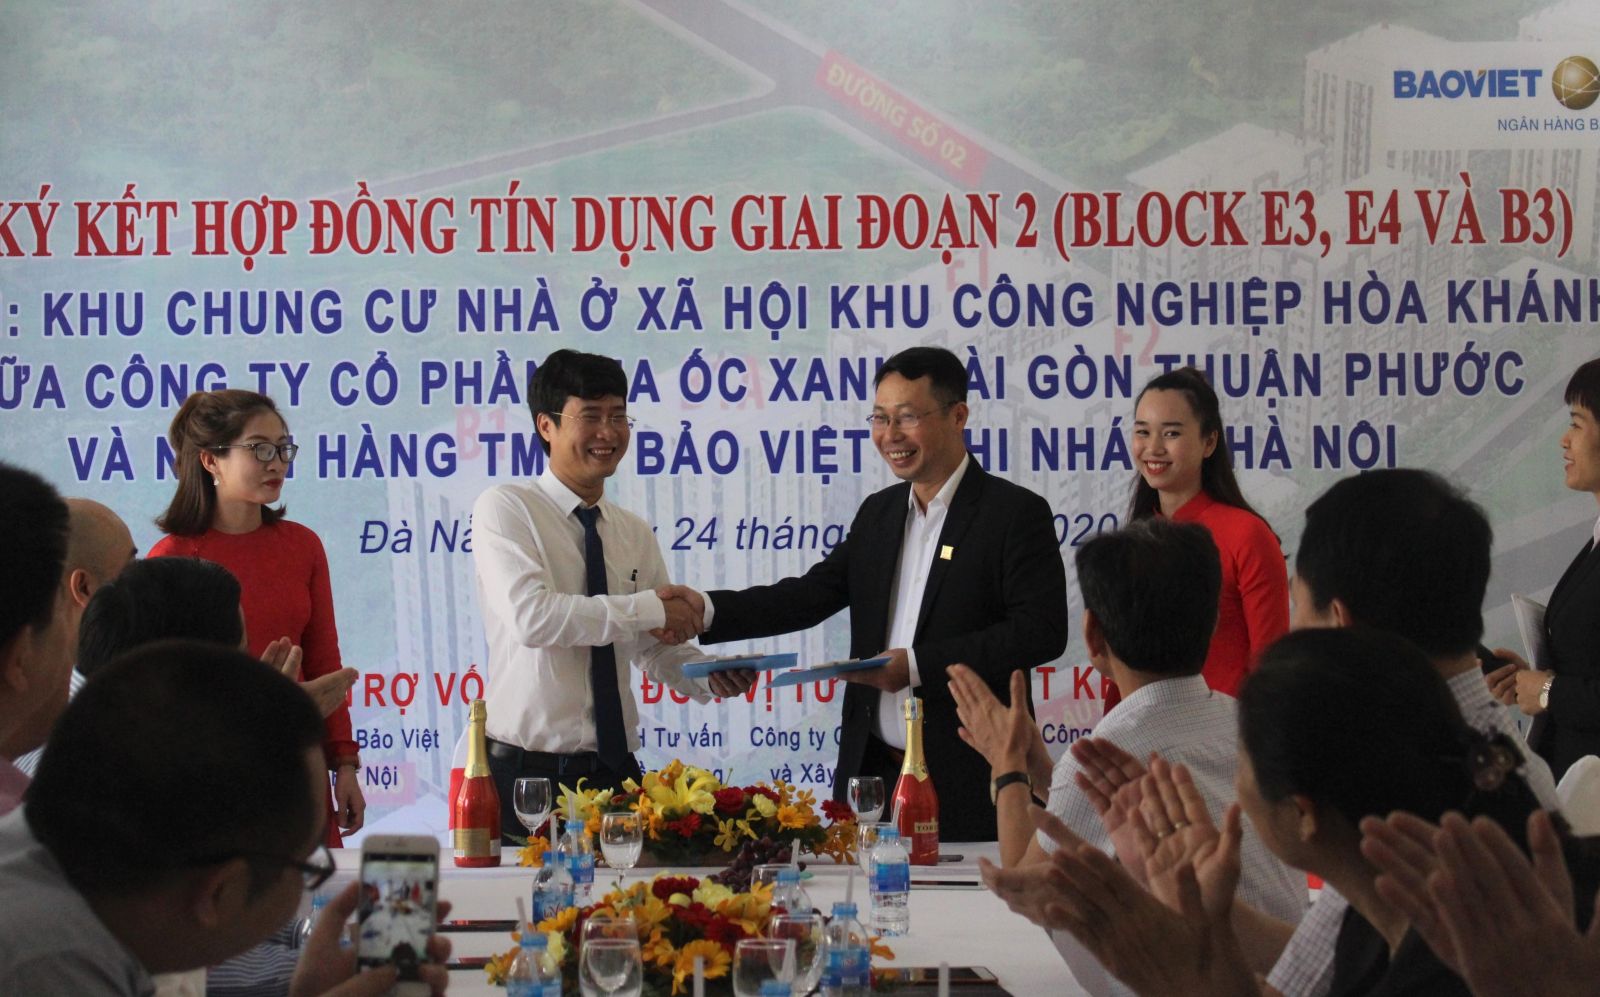 Ông Trần Hoài Phương - GĐ Chi Nhánh Hà Nội - Ngân hàng Bảo Việt và Ông Nguyễn Phú Quý - Tổng Giám đốc Công ty ký kết hợp đồng tài trợ vốn